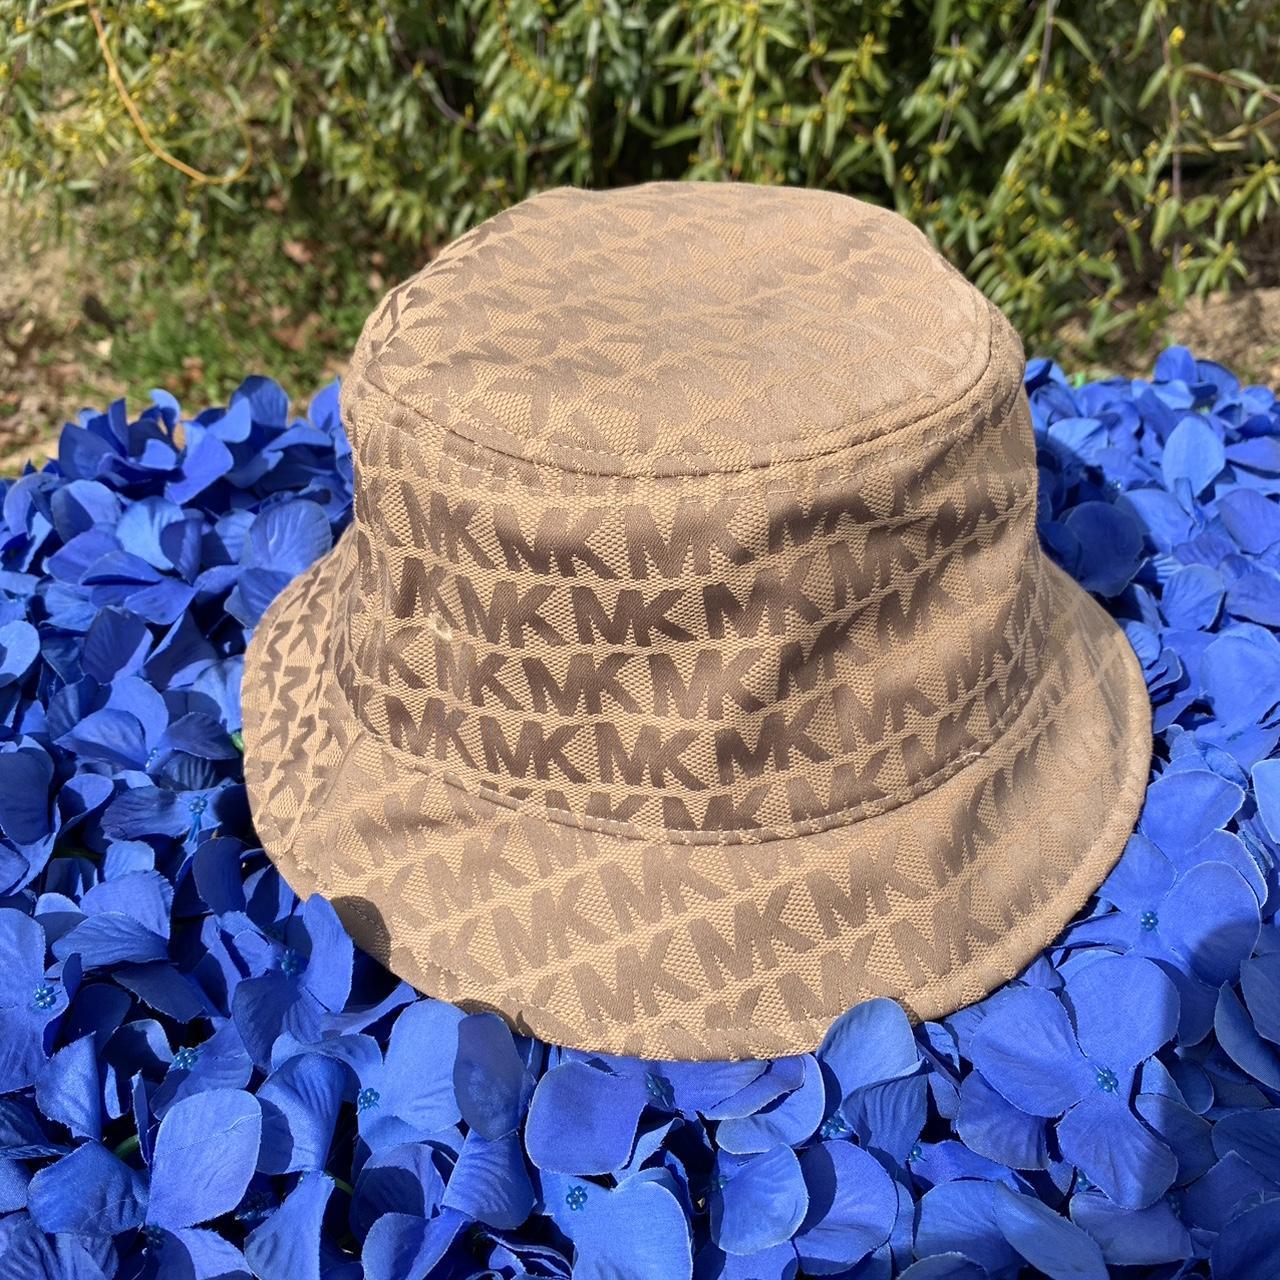 Michael Kors Women's Tan and Brown Hat | Depop